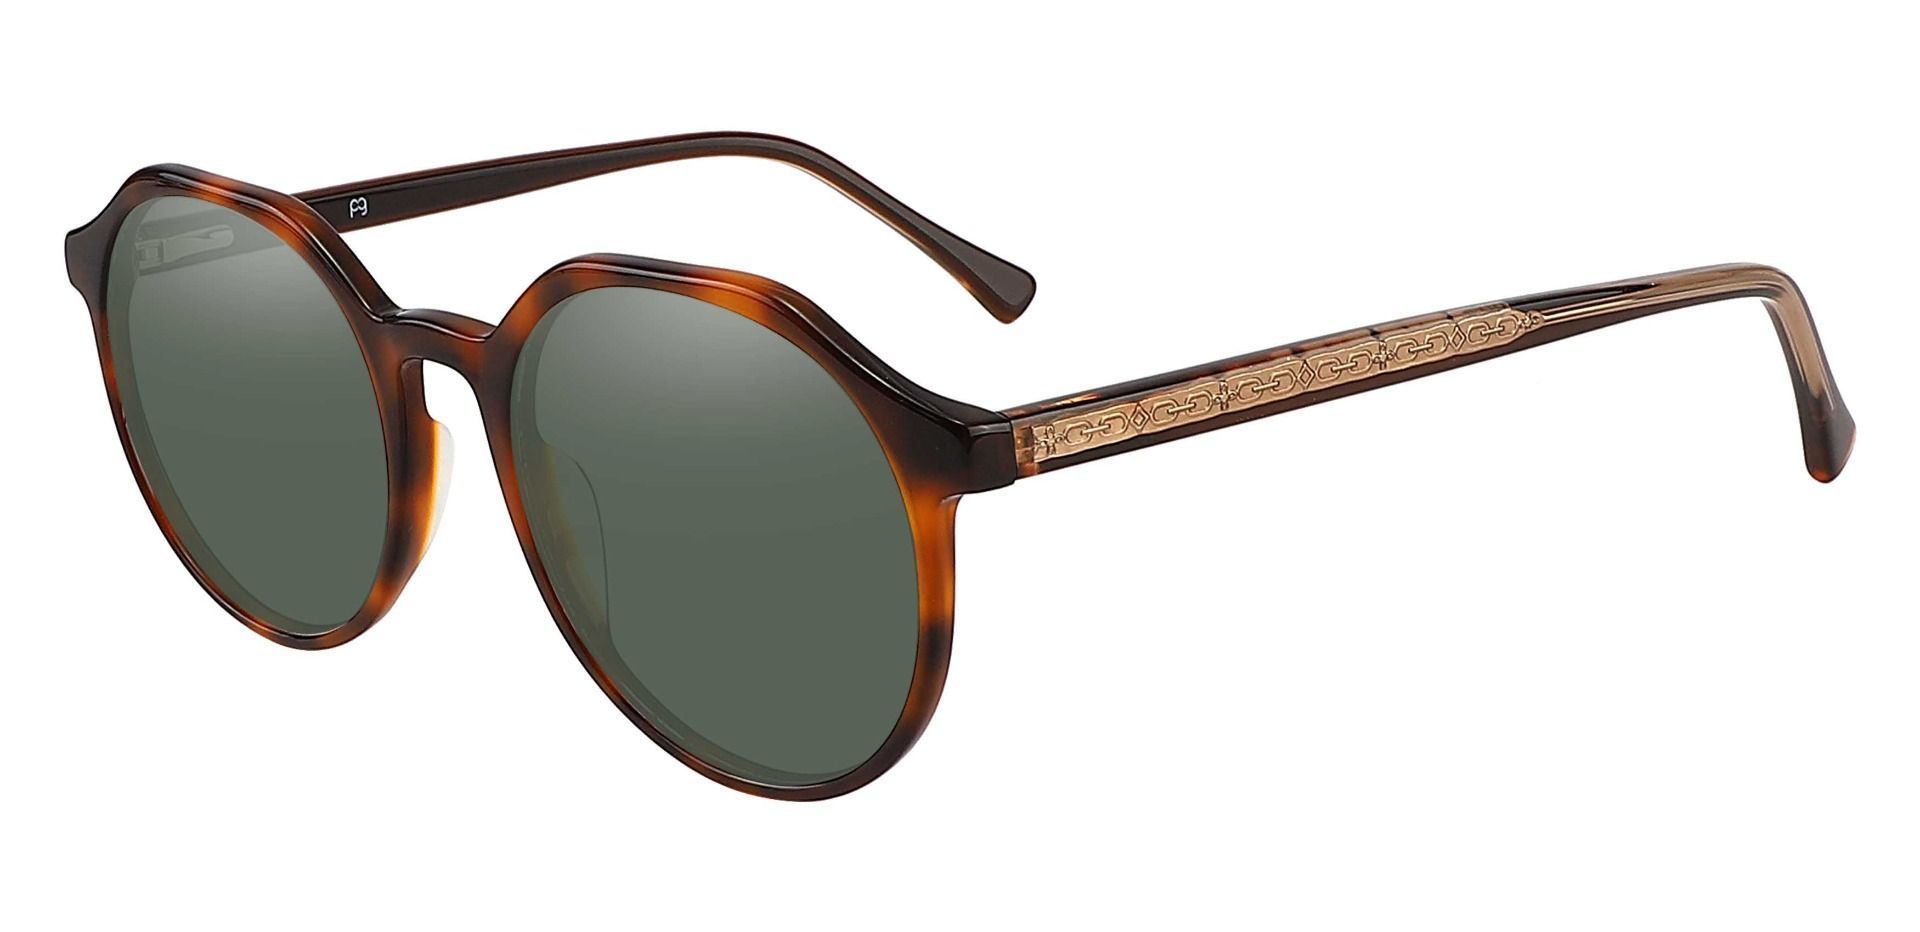 Tucker Geometric Lined Bifocal Sunglasses - Tortoise Frame With Green Lenses